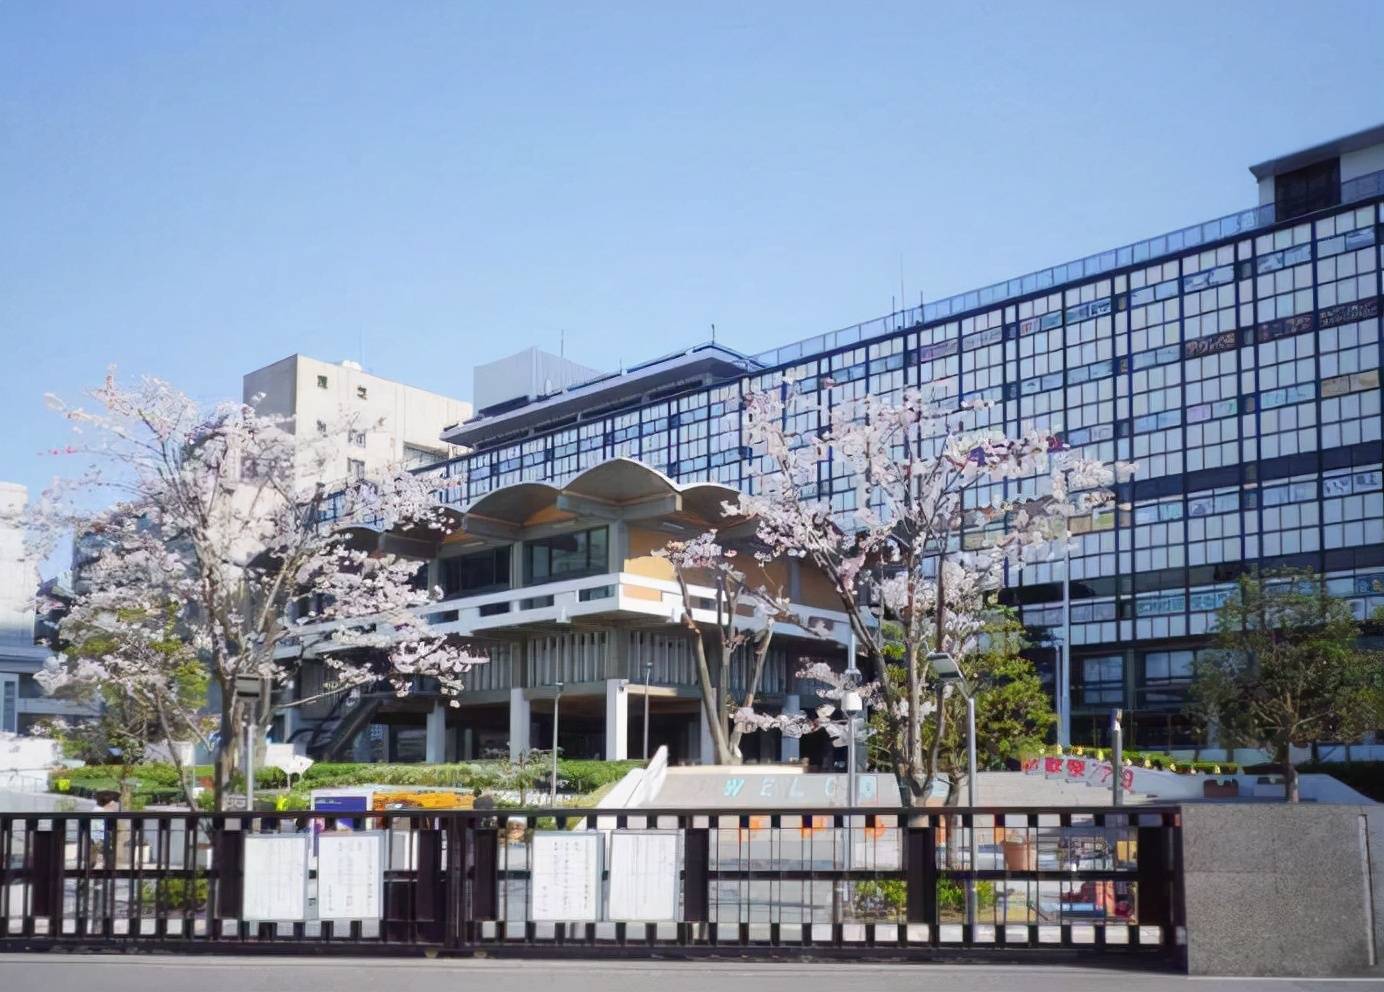 东京国际大学文森特图片